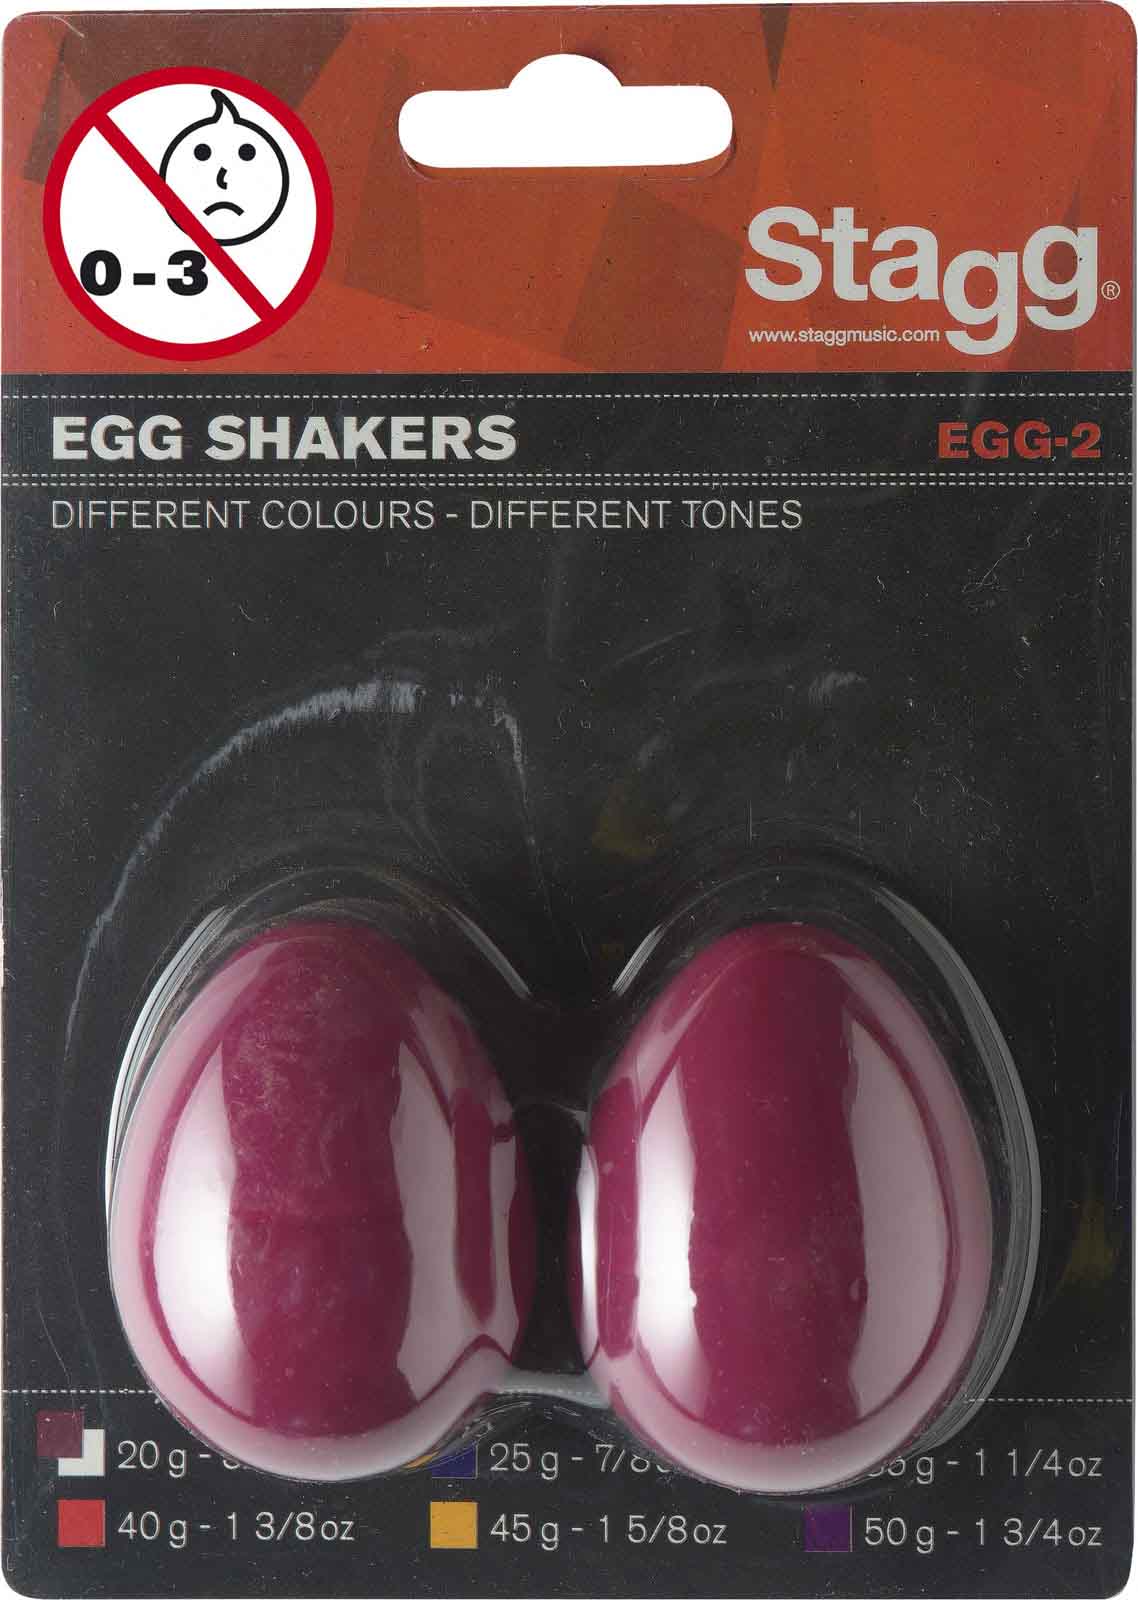 STAGG EGG-2 RD PAIR OF PLASTIC EGG SHAKER RED